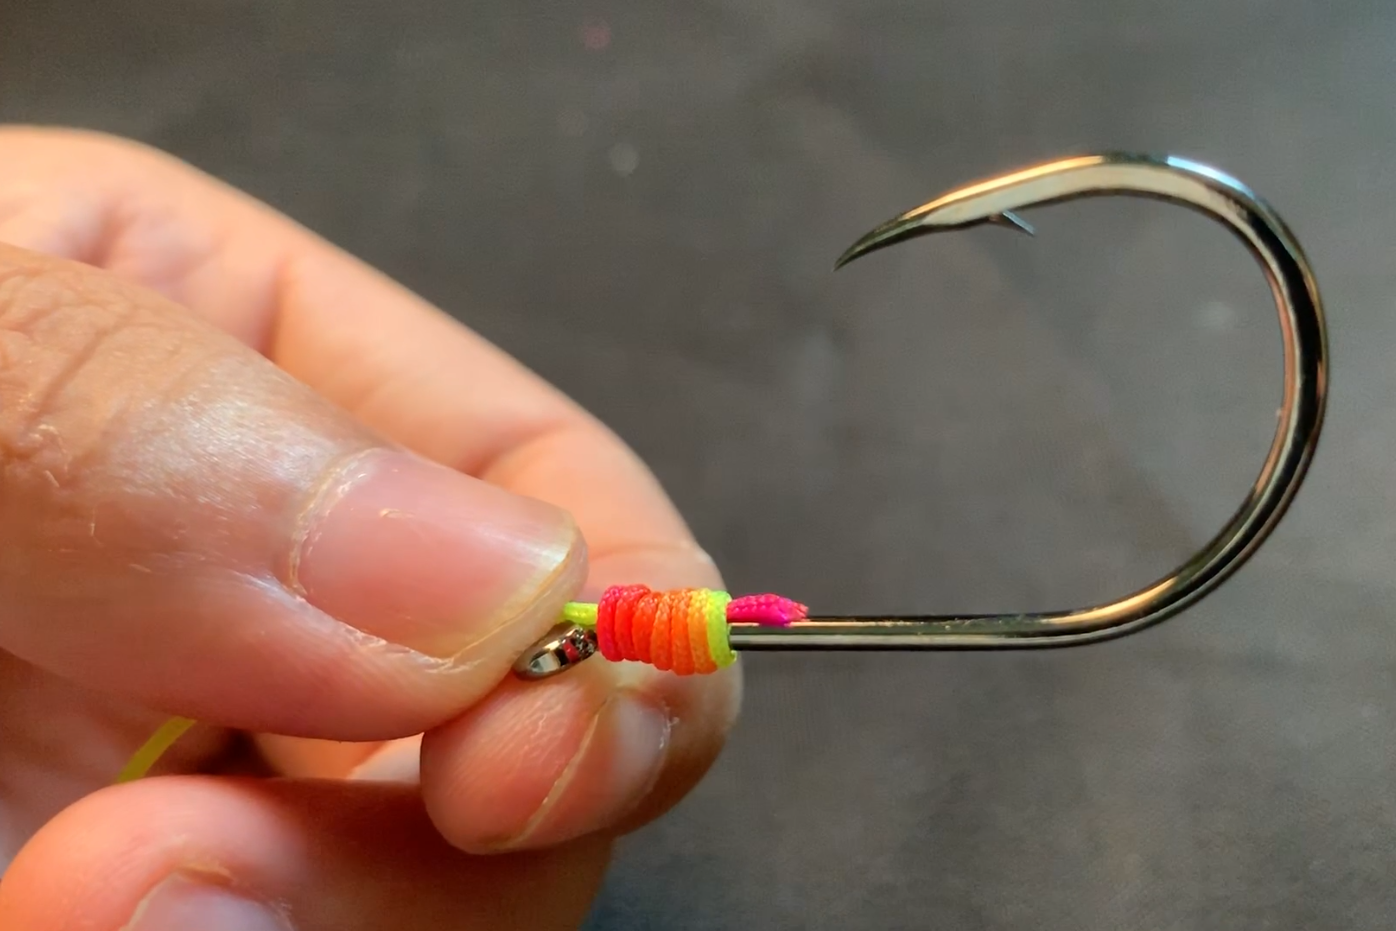 超简单鱼钩滚指绑法,快速牢固,新手钓友学会了绑鱼钩很简单!